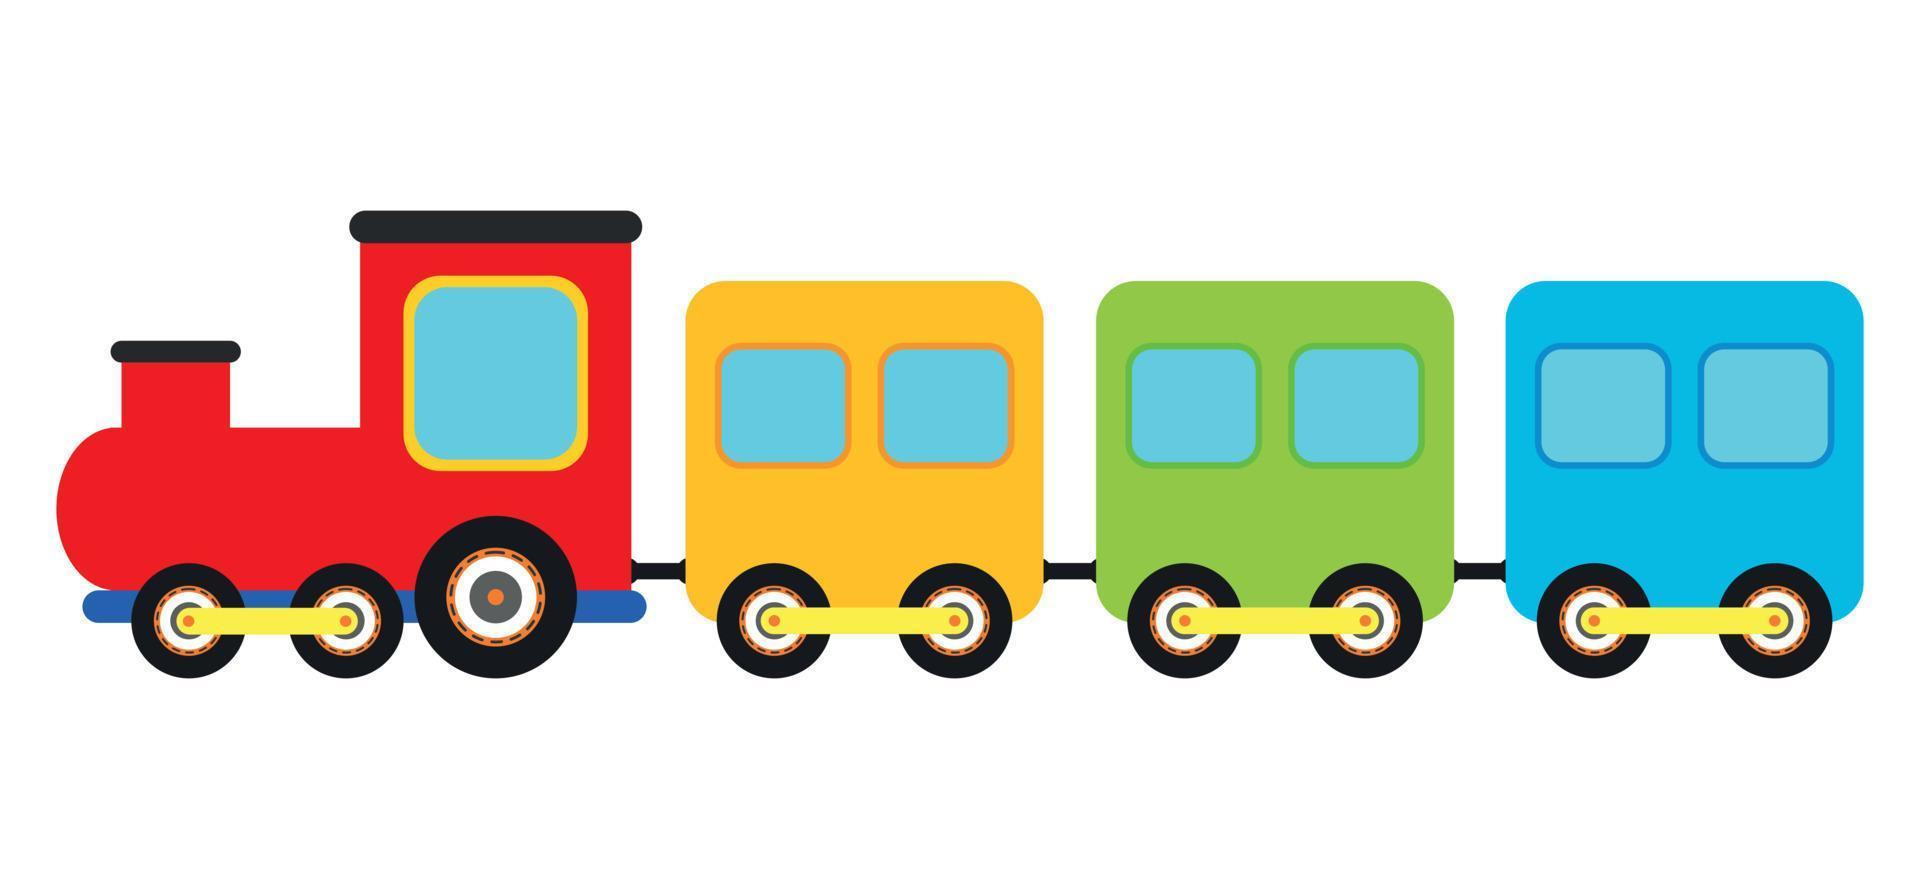 transporte de trem colorido simples em ilustração vetorial de desenho animado plano vetor